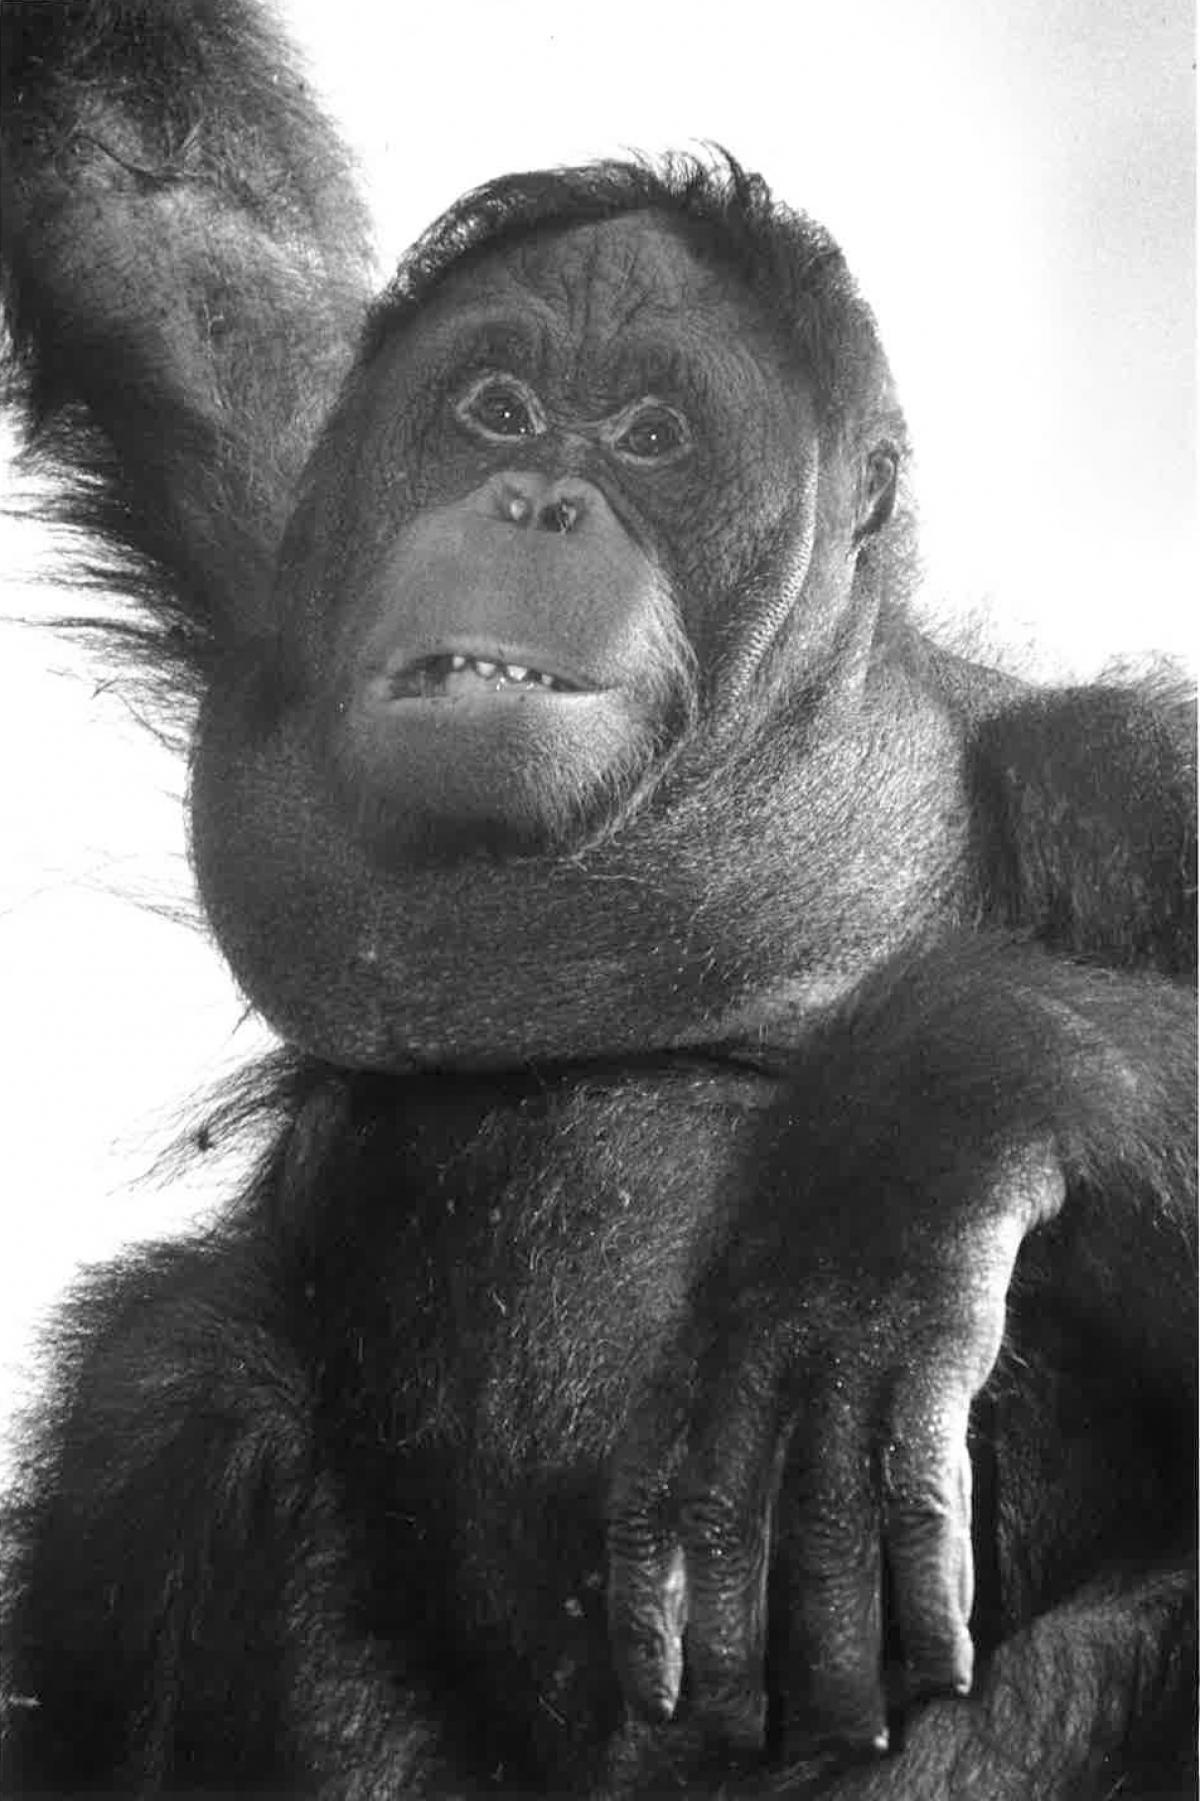 Banji the Orangutan at Monkey World in 1992